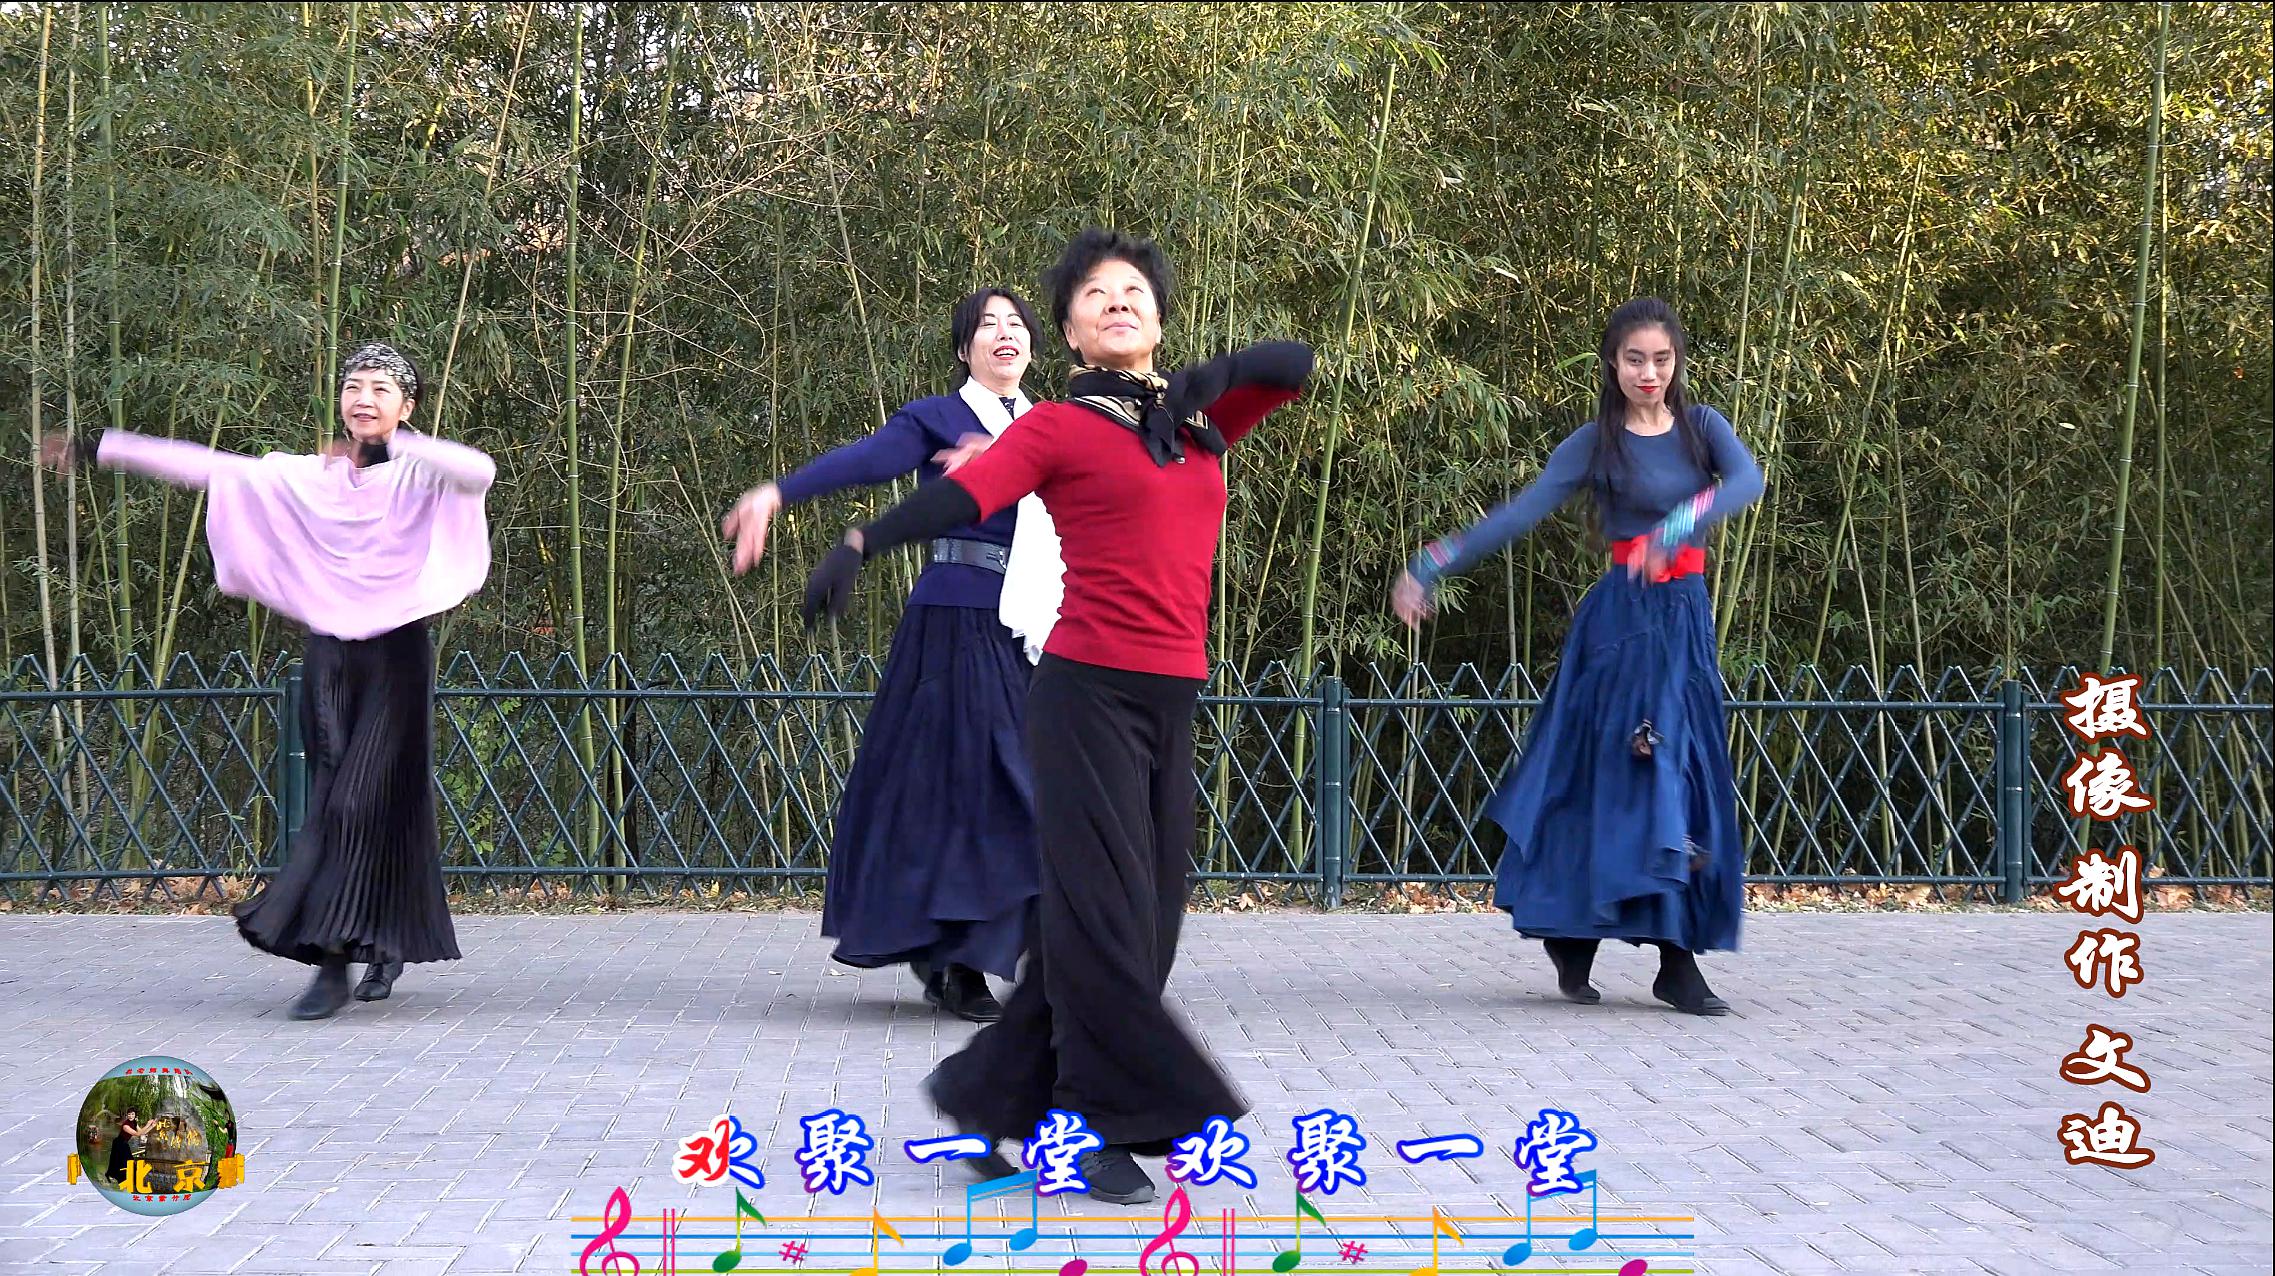 紫竹院广场舞《欢聚一堂》,崔老师领舞,跳的欢快喜庆!